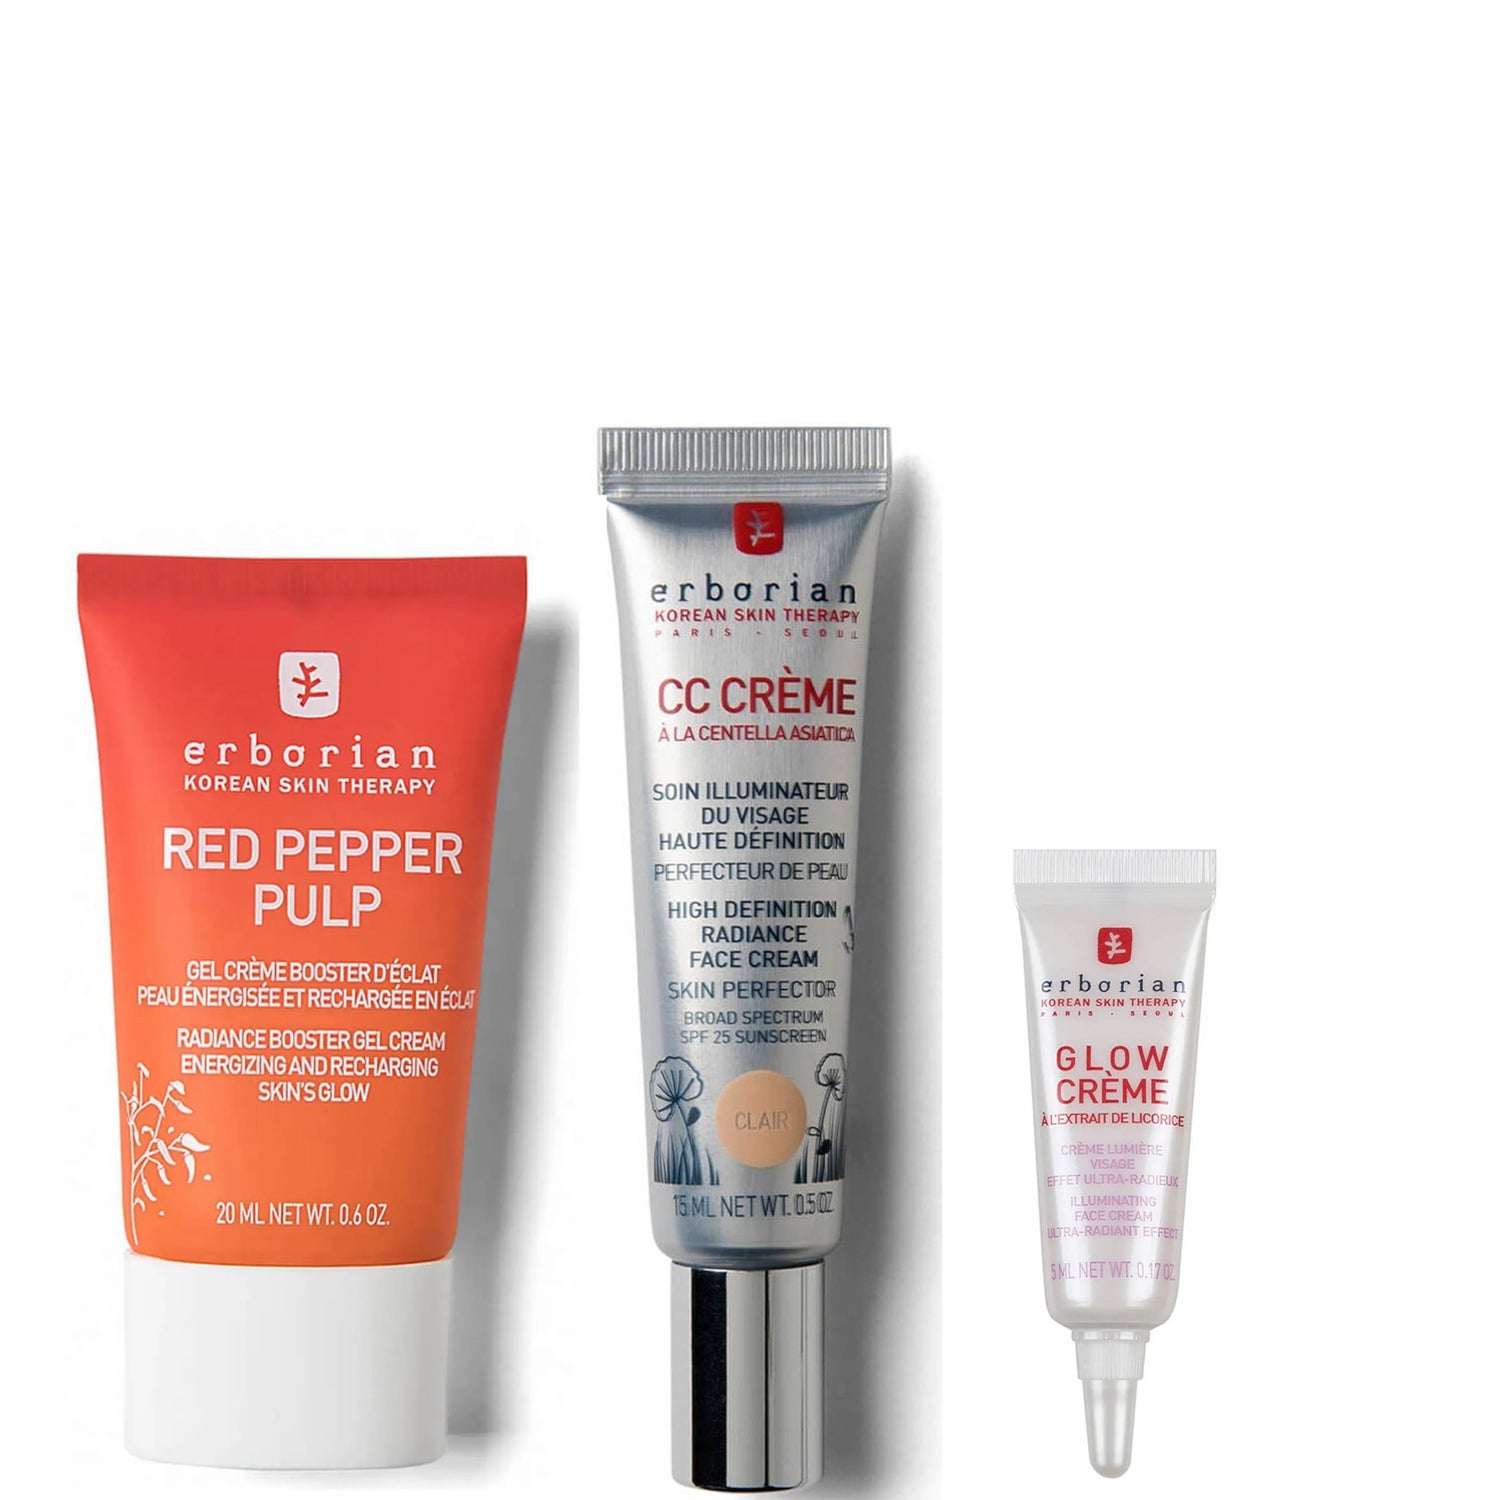 Świecający pielęgnacja skóry i CC Cream 15ml (różne odcienie)